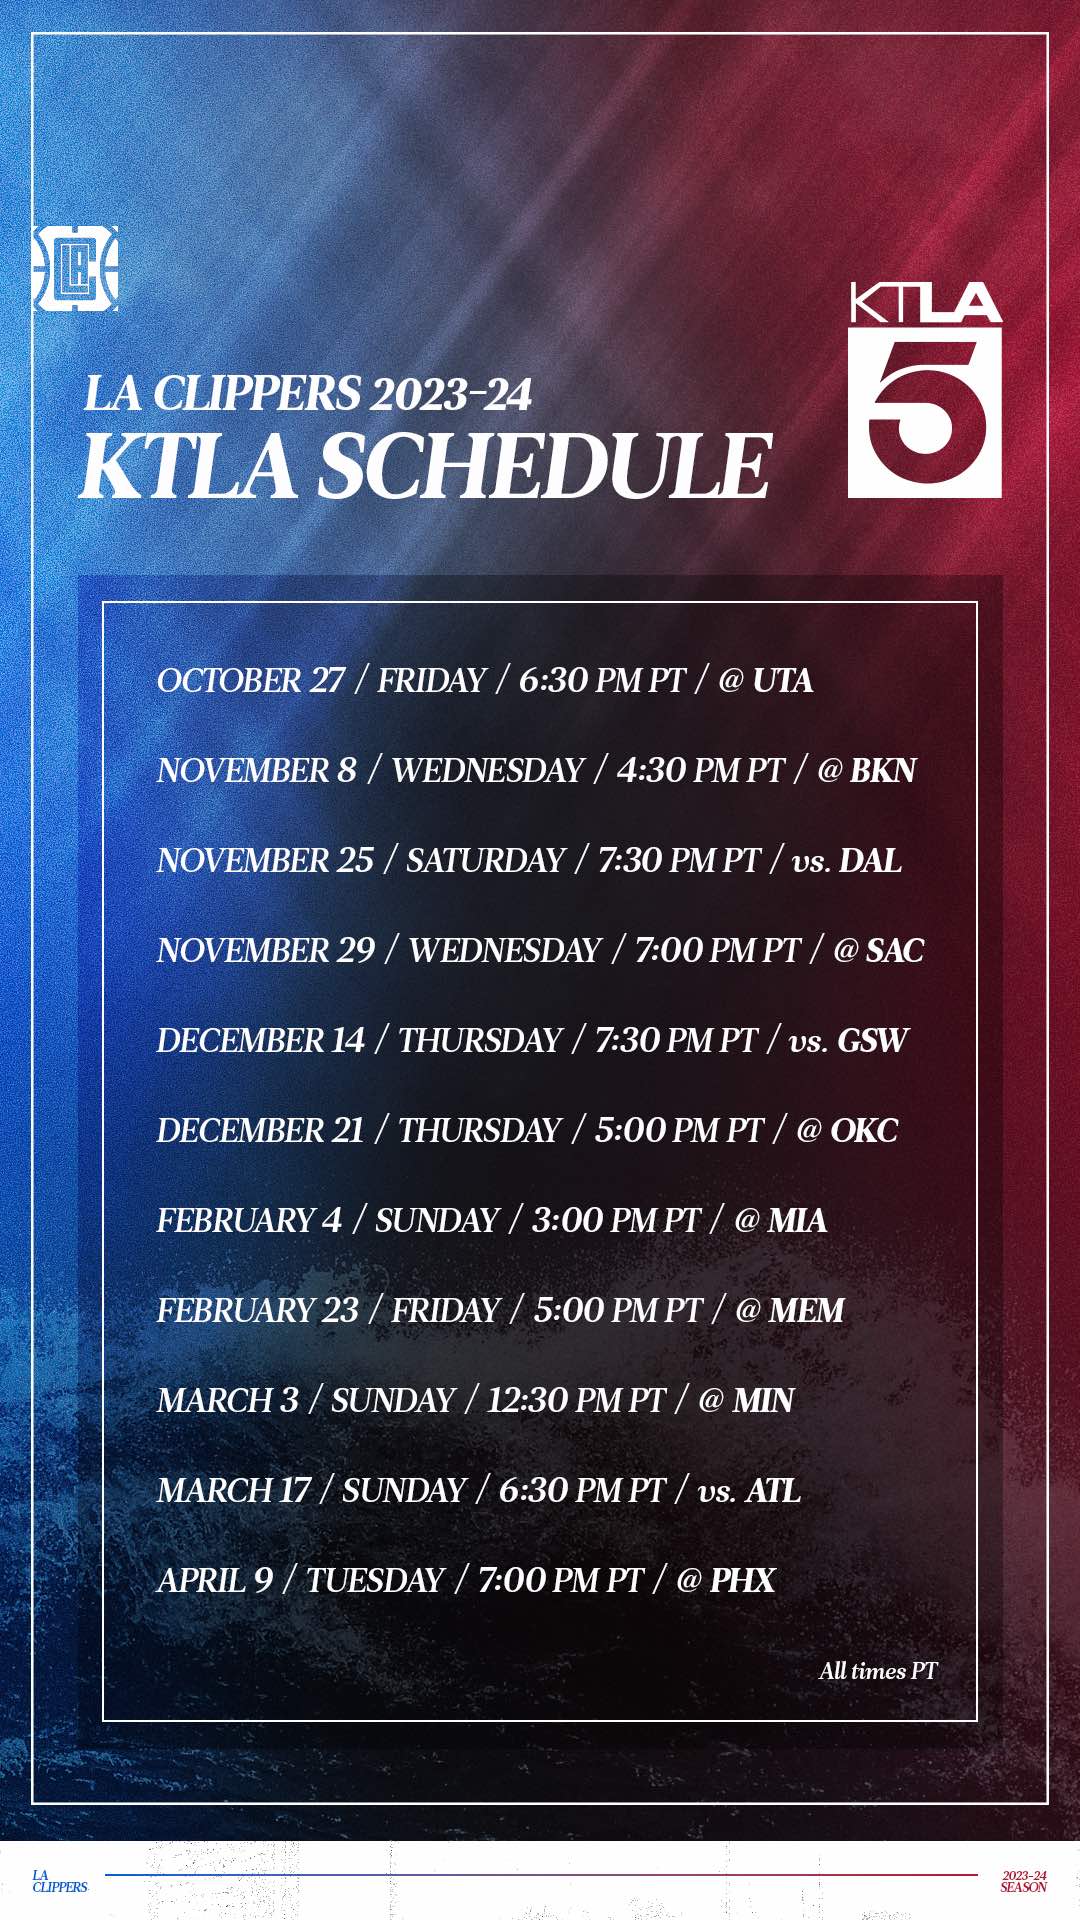 LA Clippers KTLA schedule 2023-24